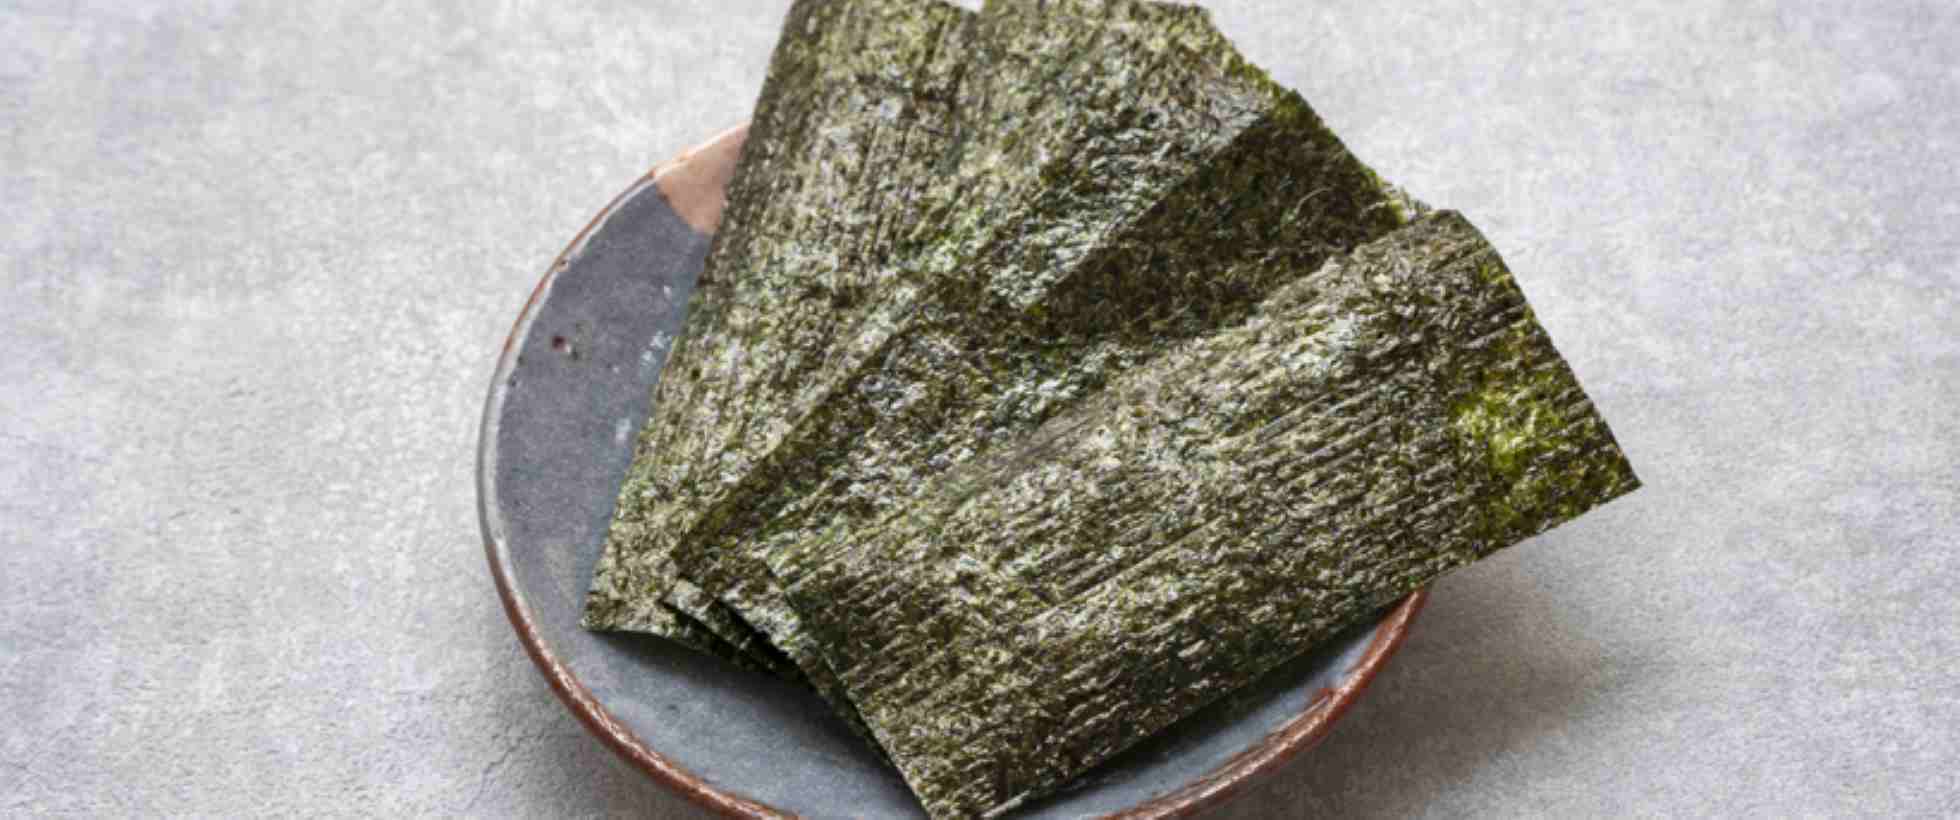 Come si tosta l’alga nori?